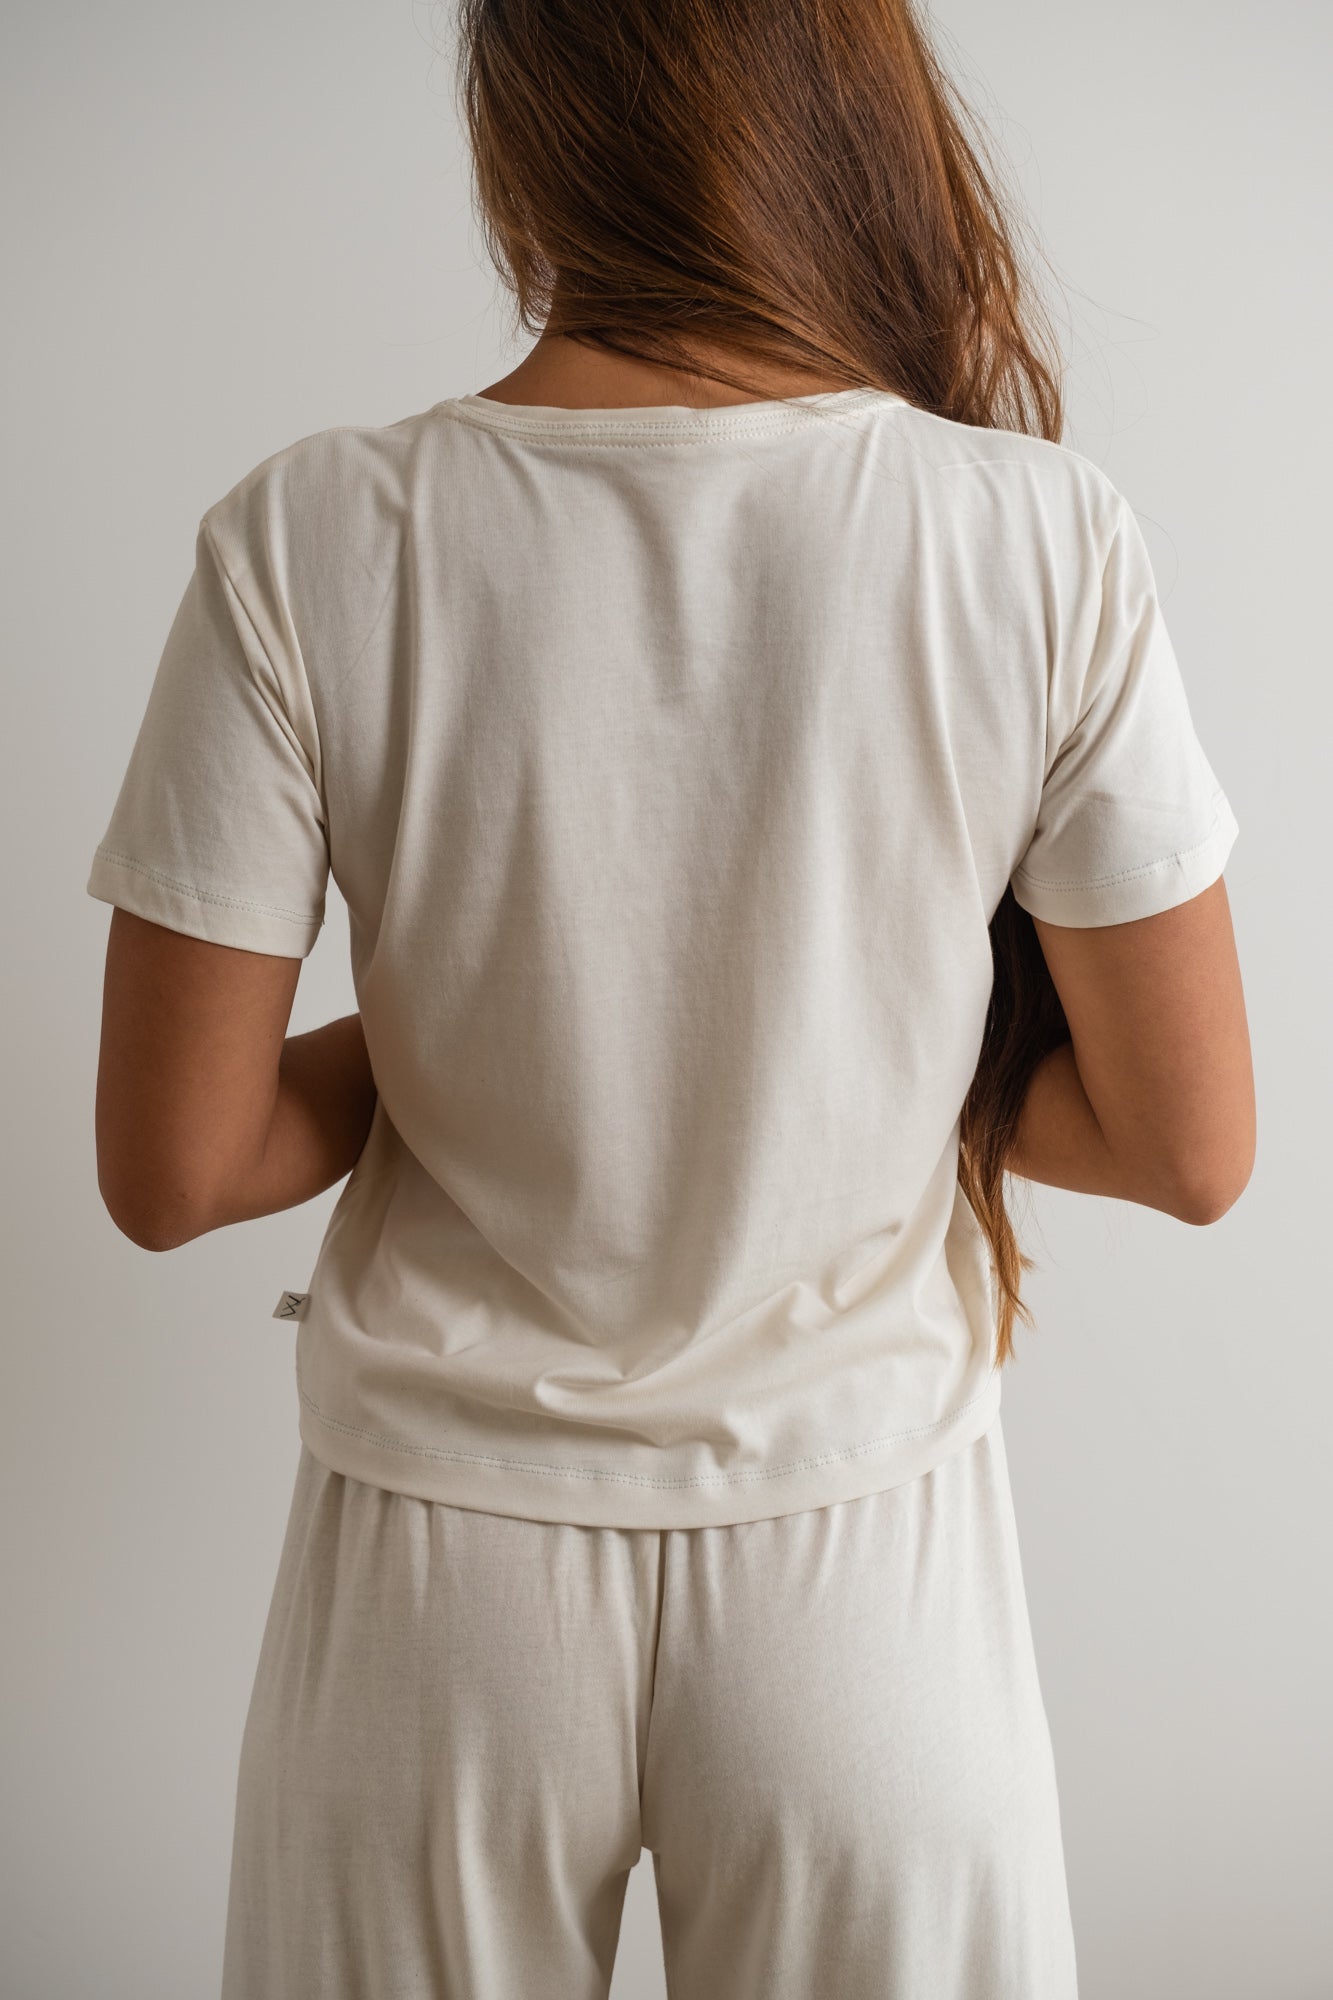 MIA Moda Regenerativa Camisetas XL Camiseta Esencial mujer - natural